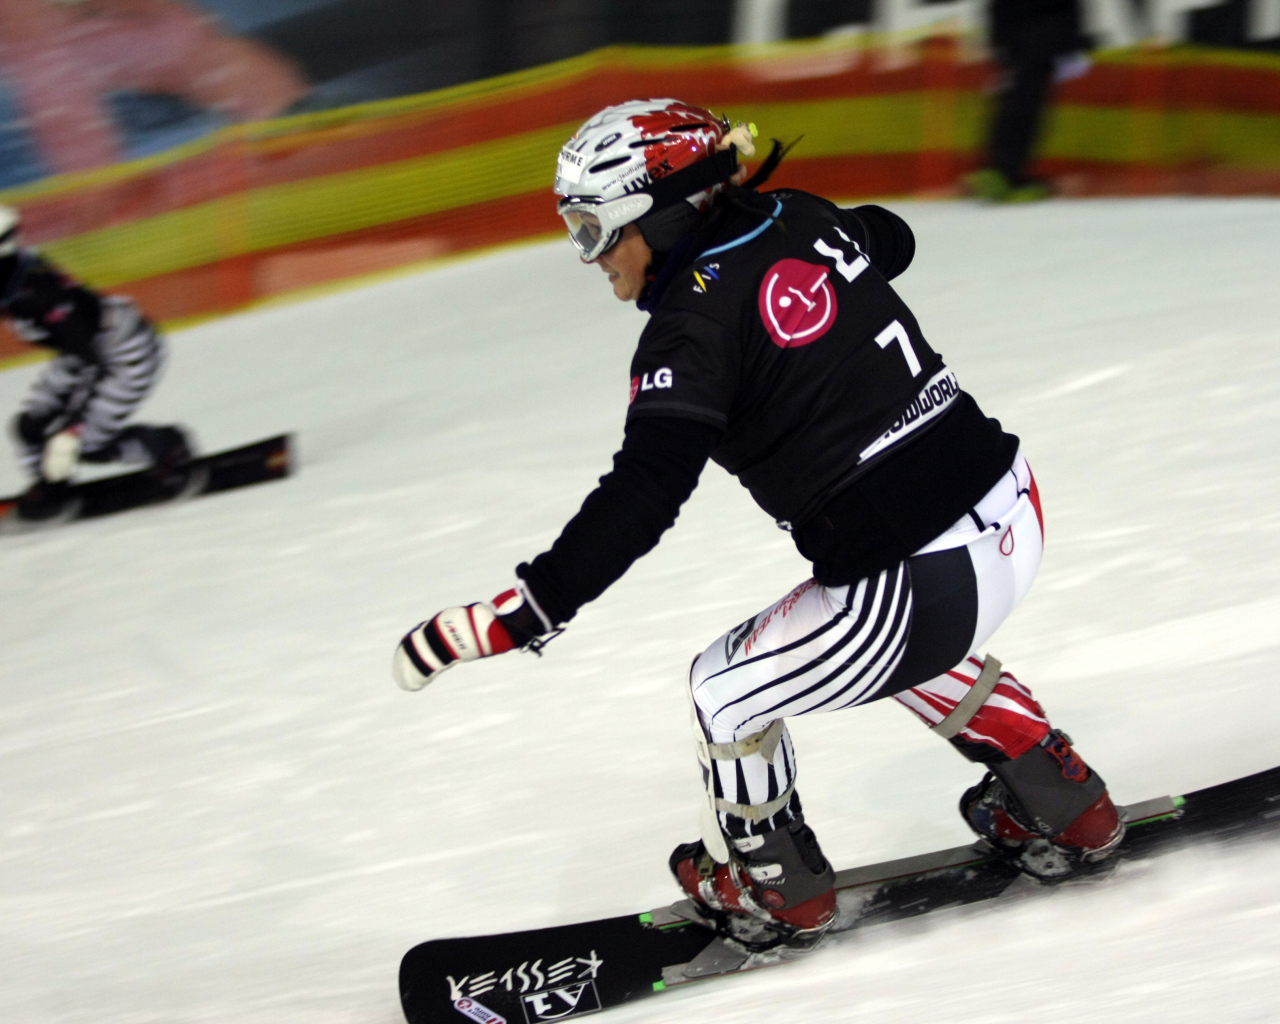 Анке Карстенс немецкая сноубордистка обладательница серебряной медали в Сочи